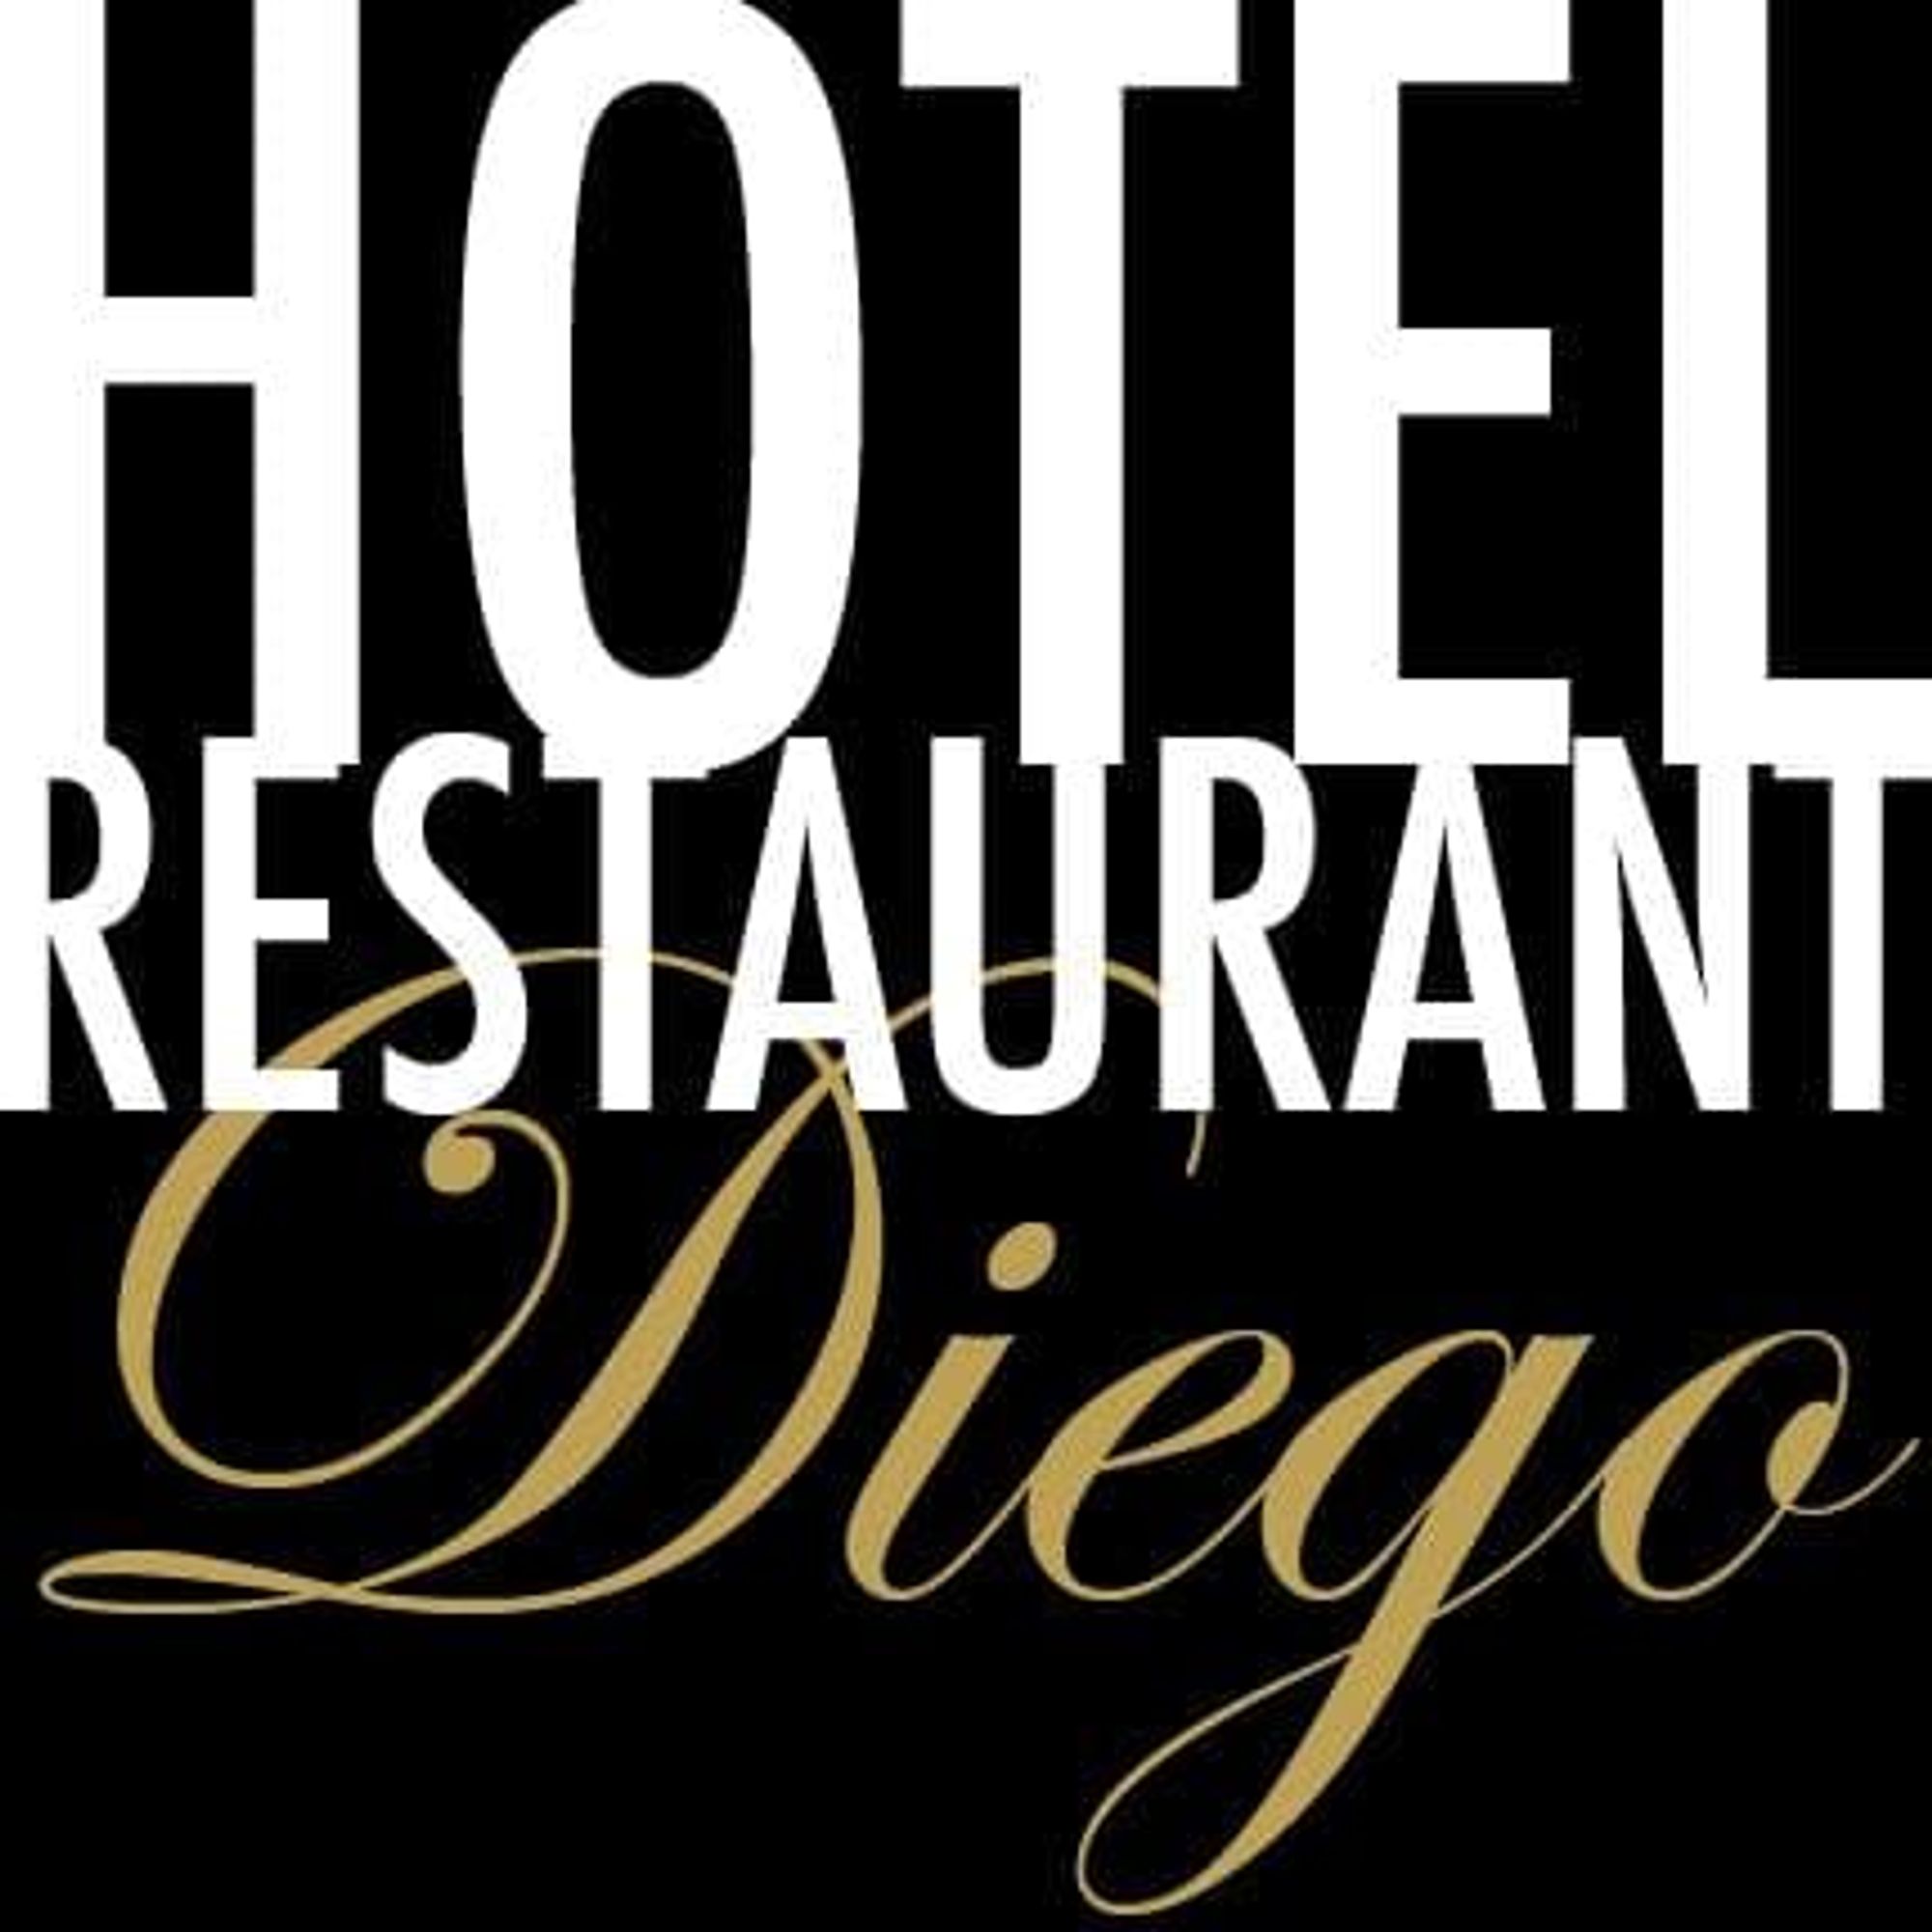 Hotel Restaurant Diego